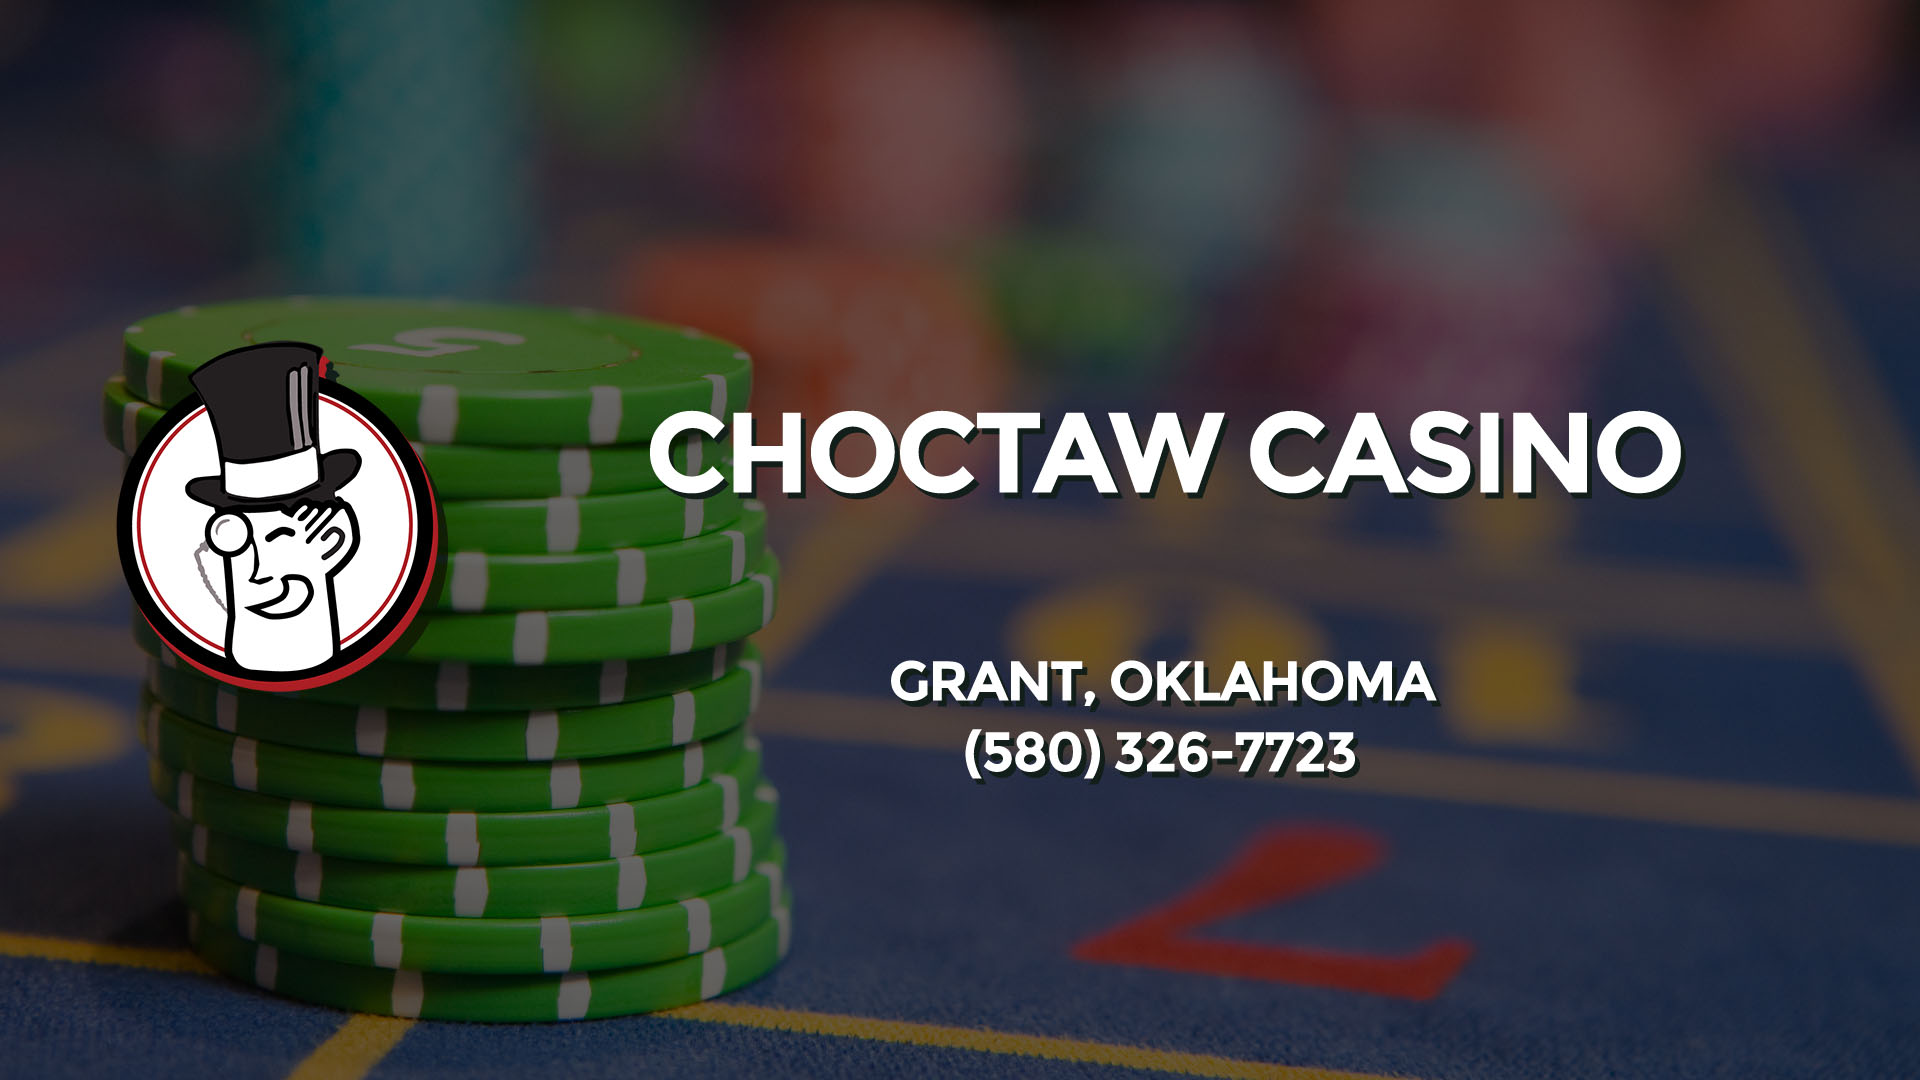 man shot at choctaw casino grant